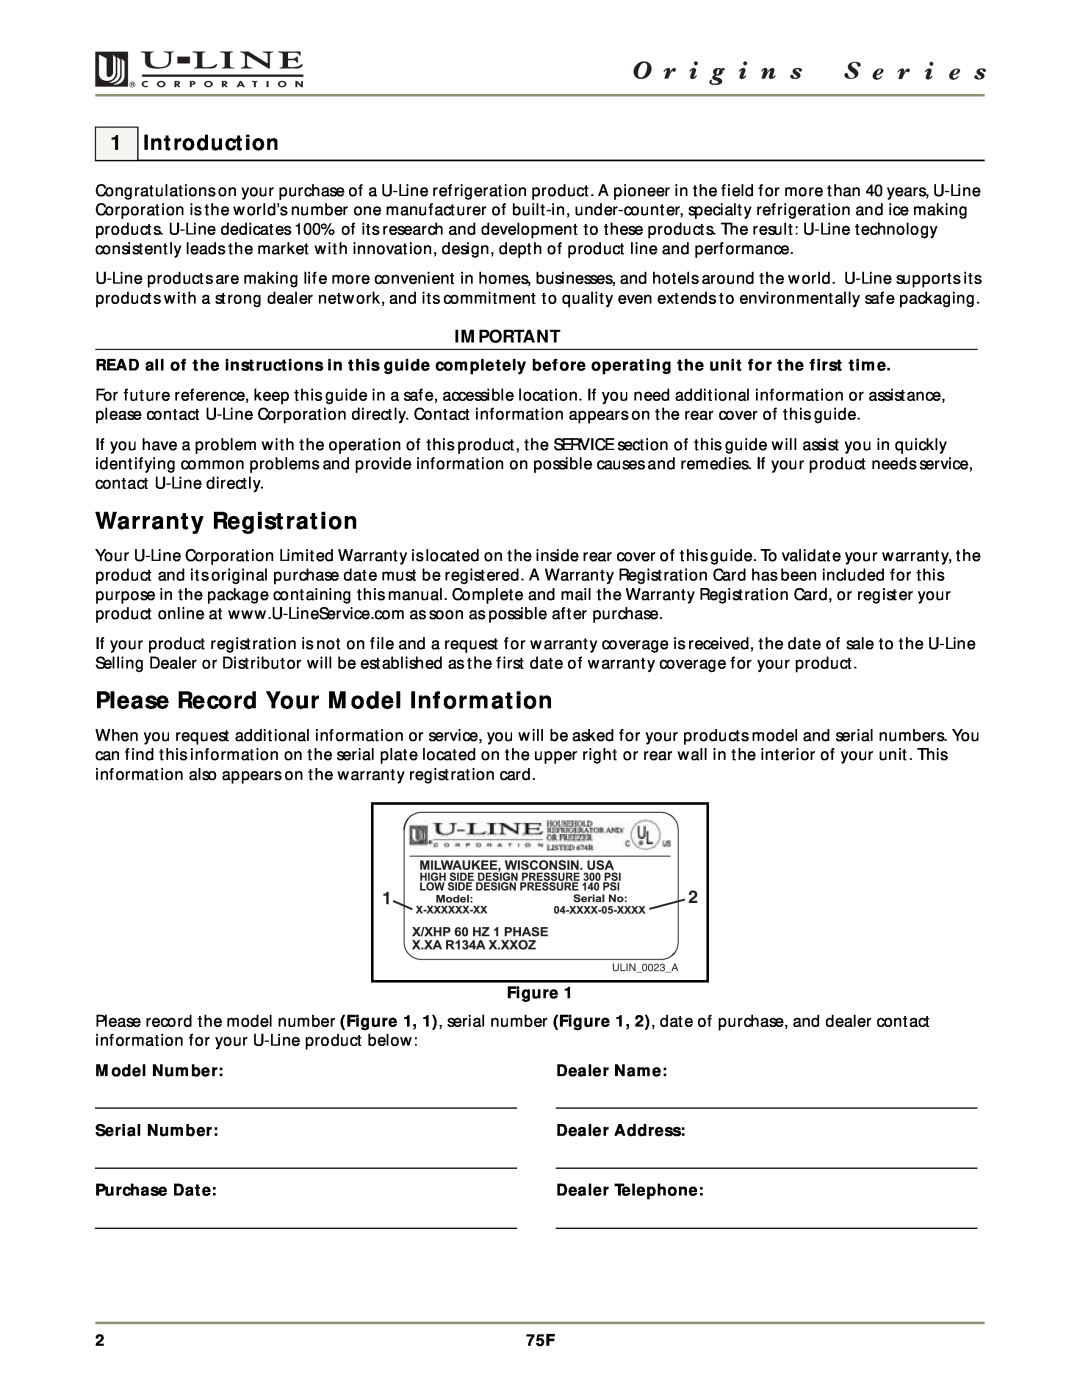 U-Line 75F manual Warranty Registration, Please Record Your Model Information, Introduction, Model Number, Dealer Name 